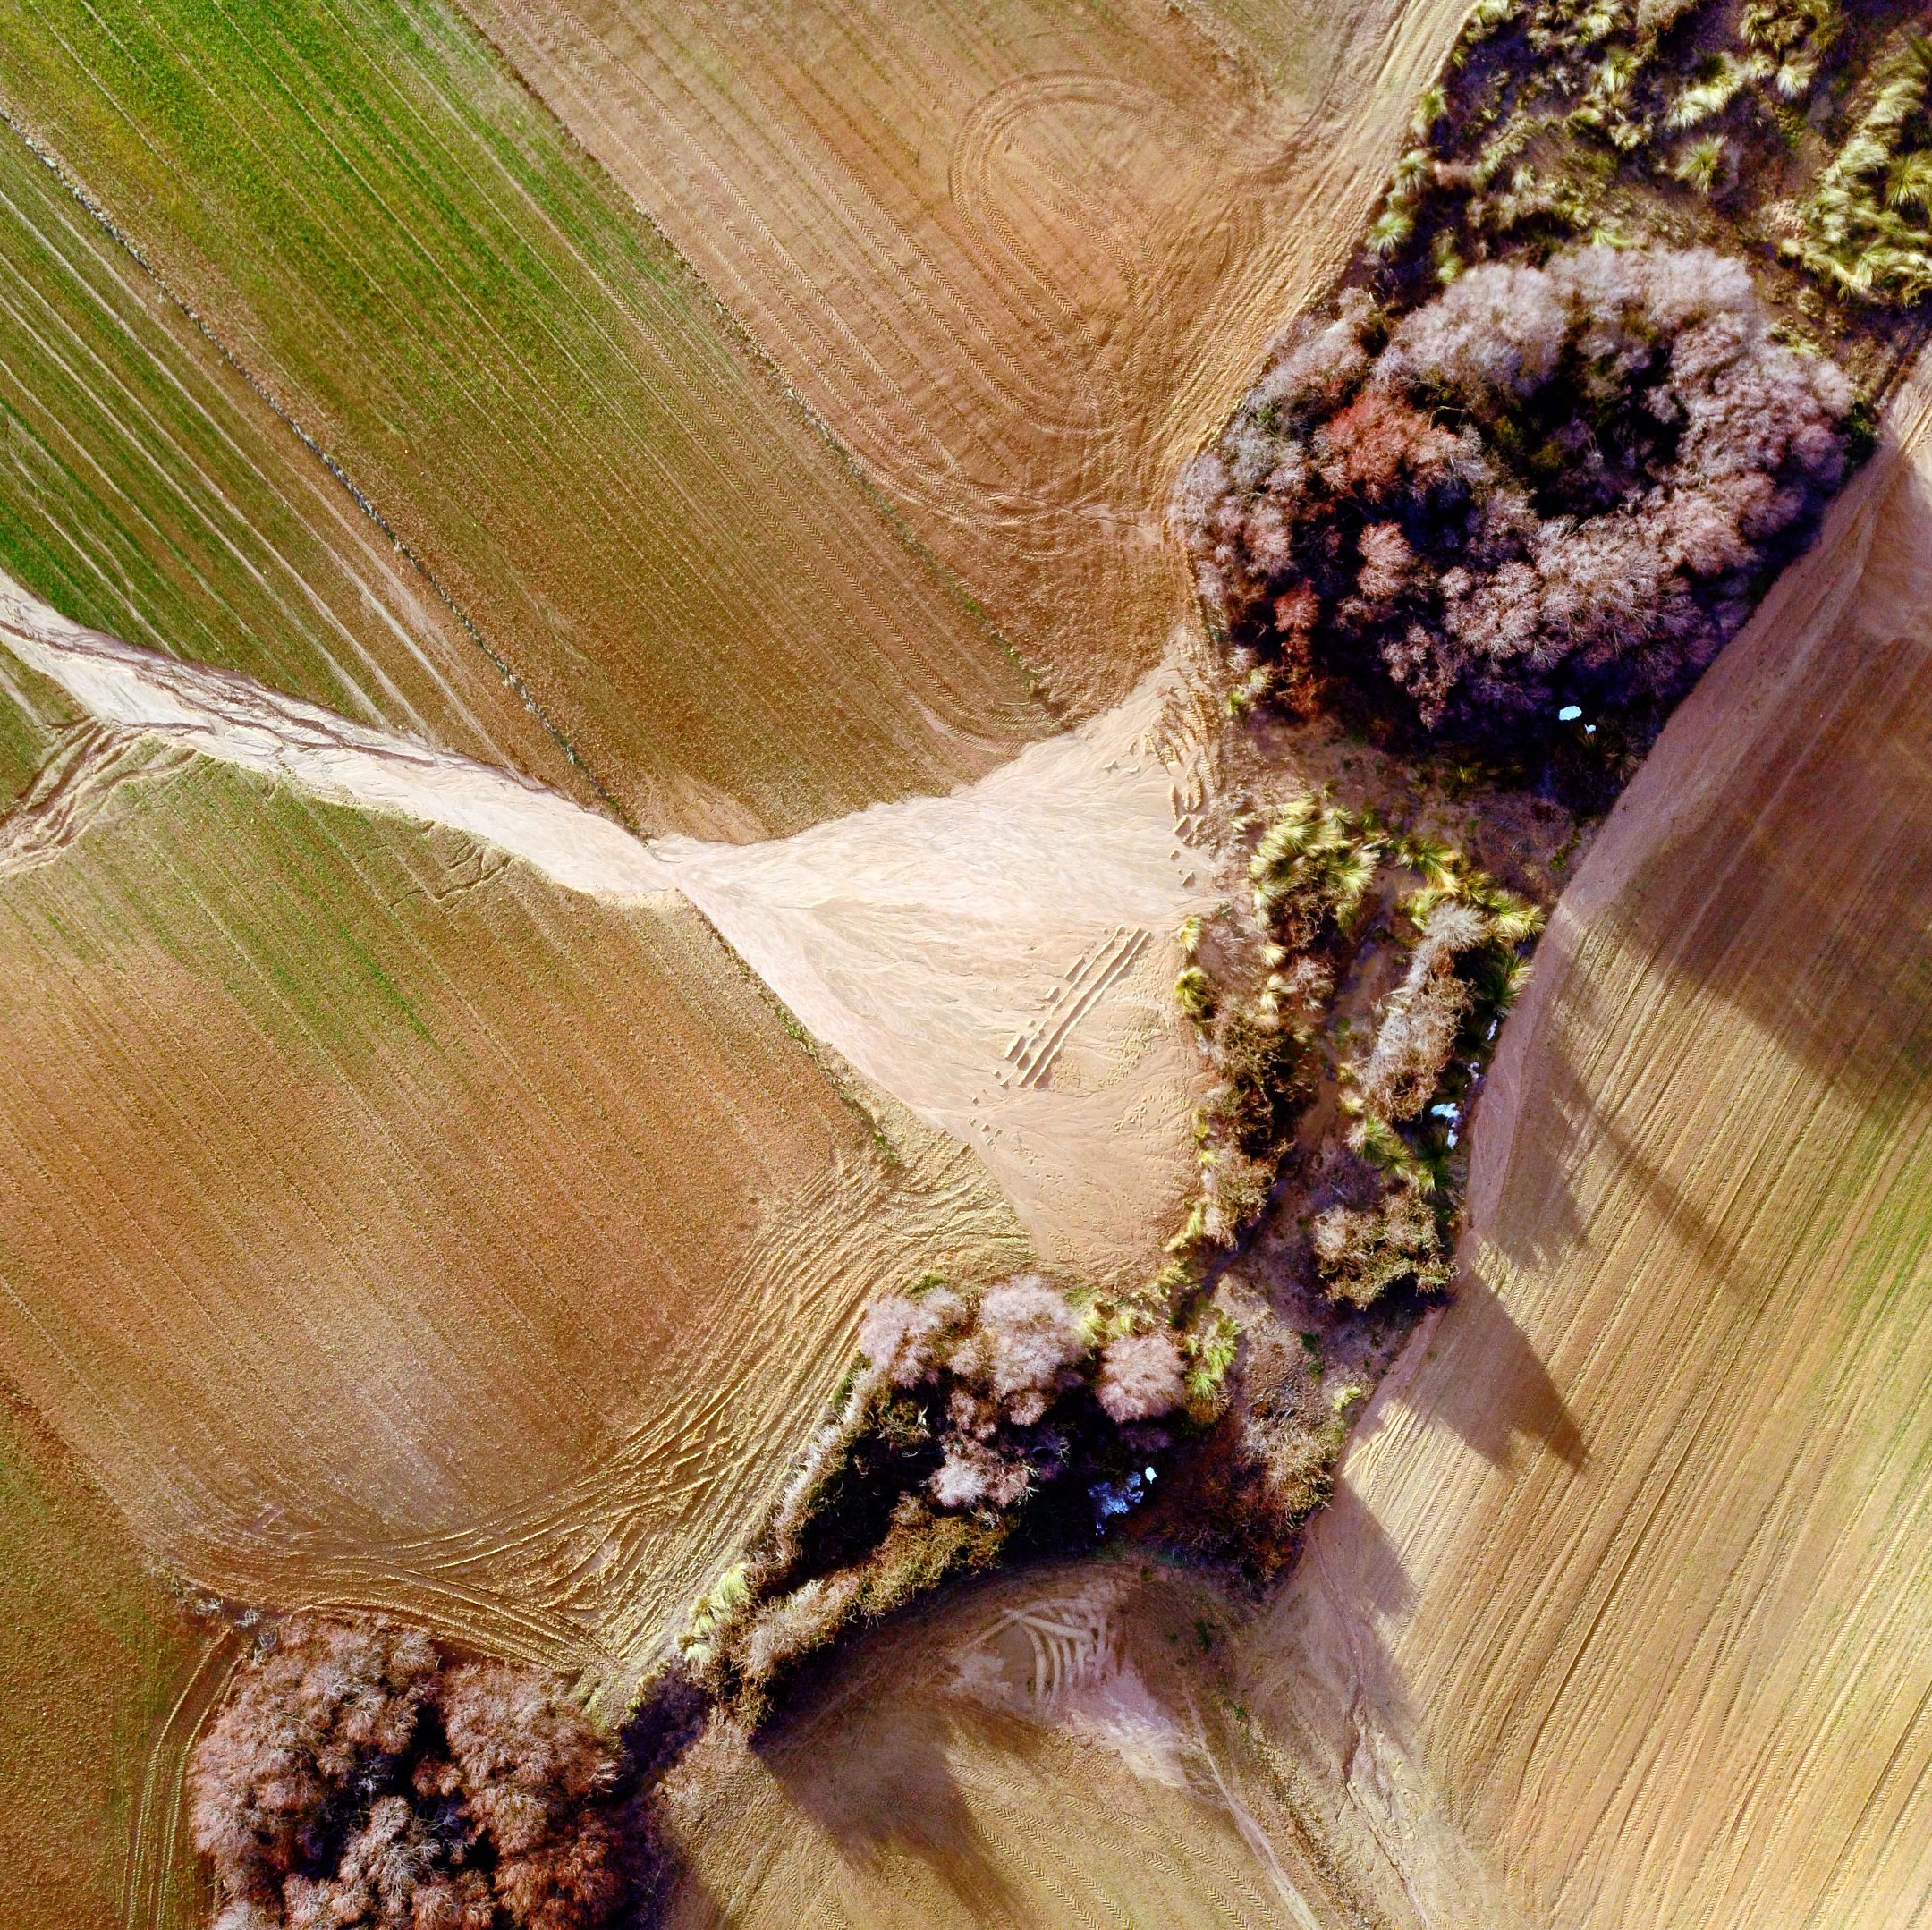 Vuelo de peritación de daños en agricultura con dron despues de la borrasca Filomena. Aerial Tecnica©2021